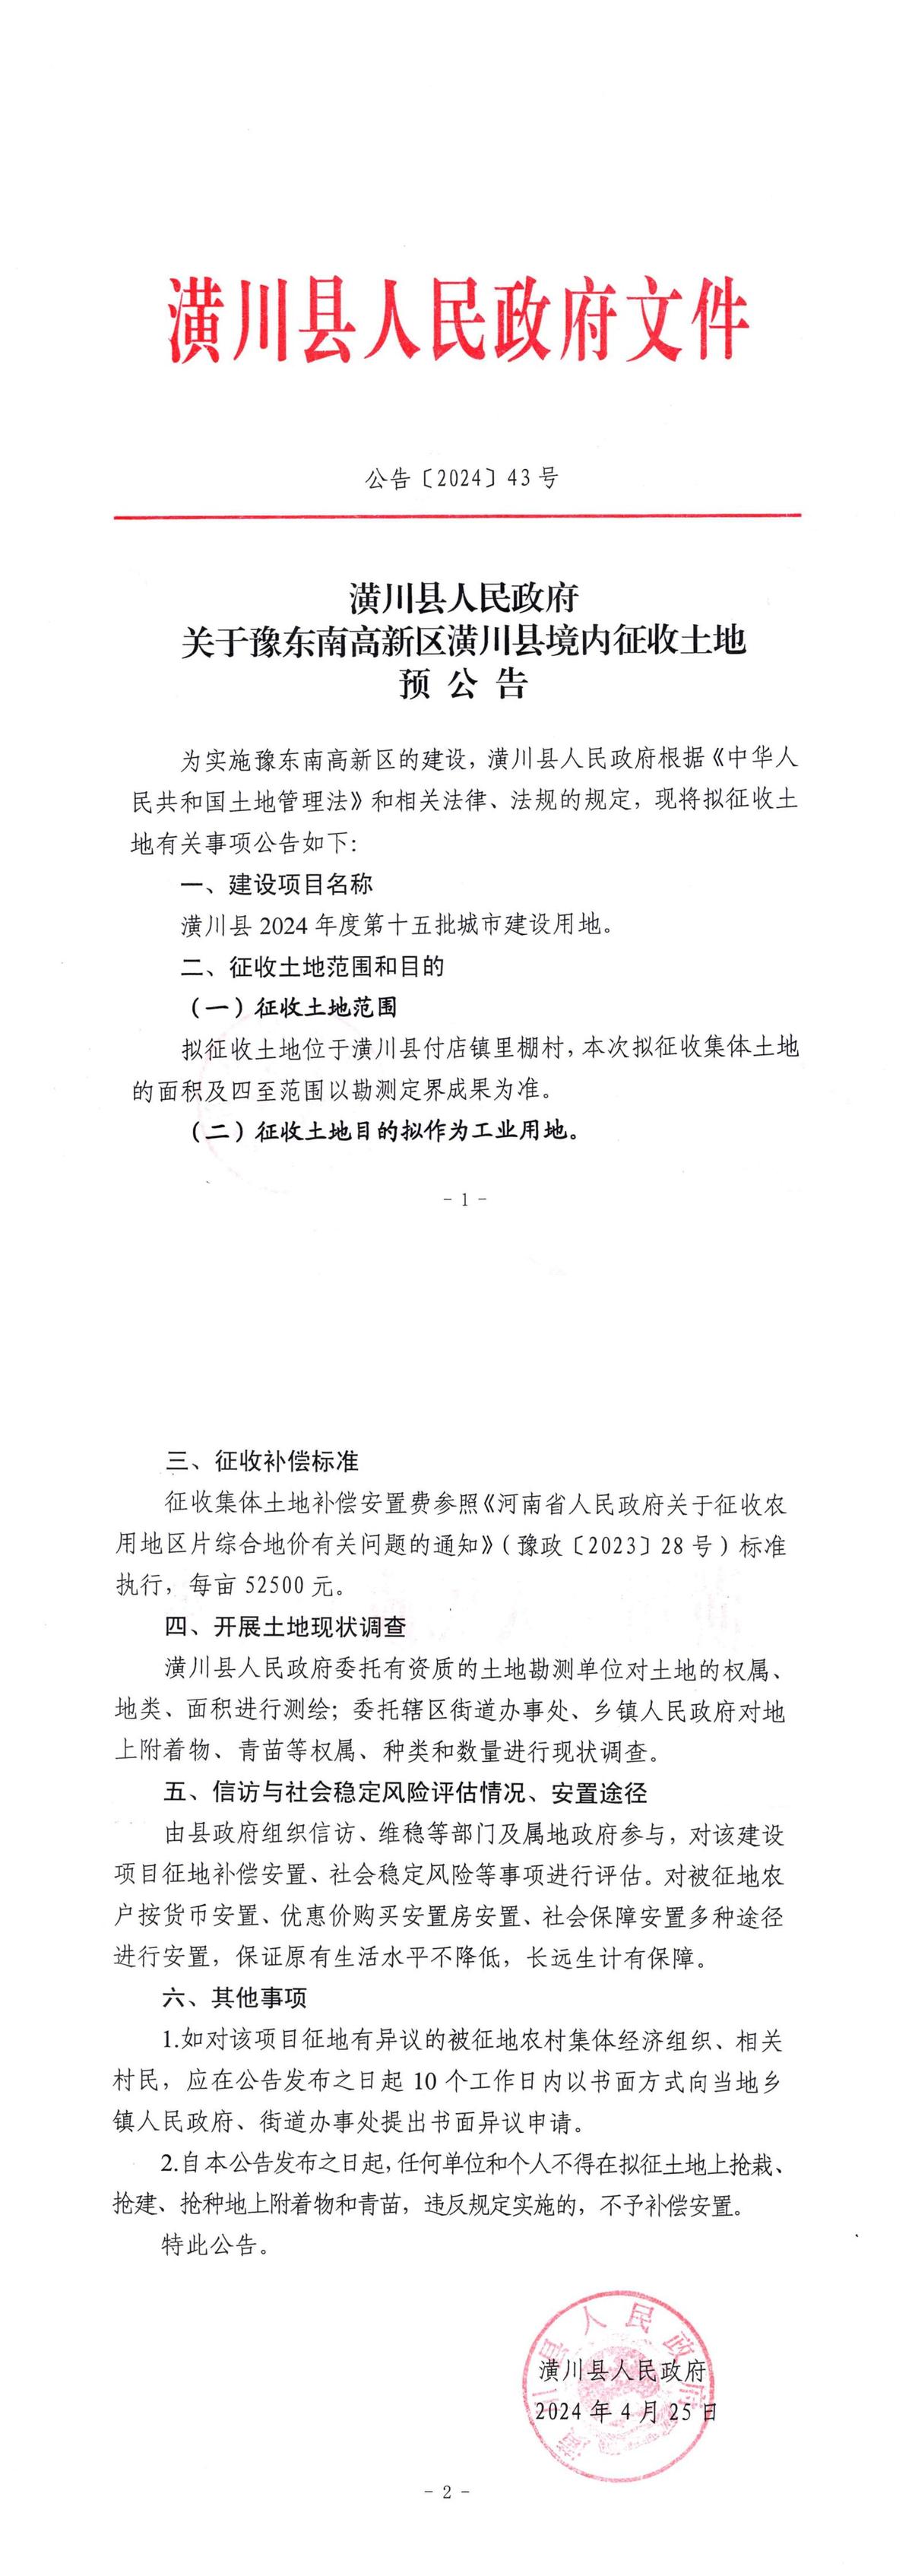 公告〔2024〕41号关于豫东南高新区潢川县境内征收土地预公告